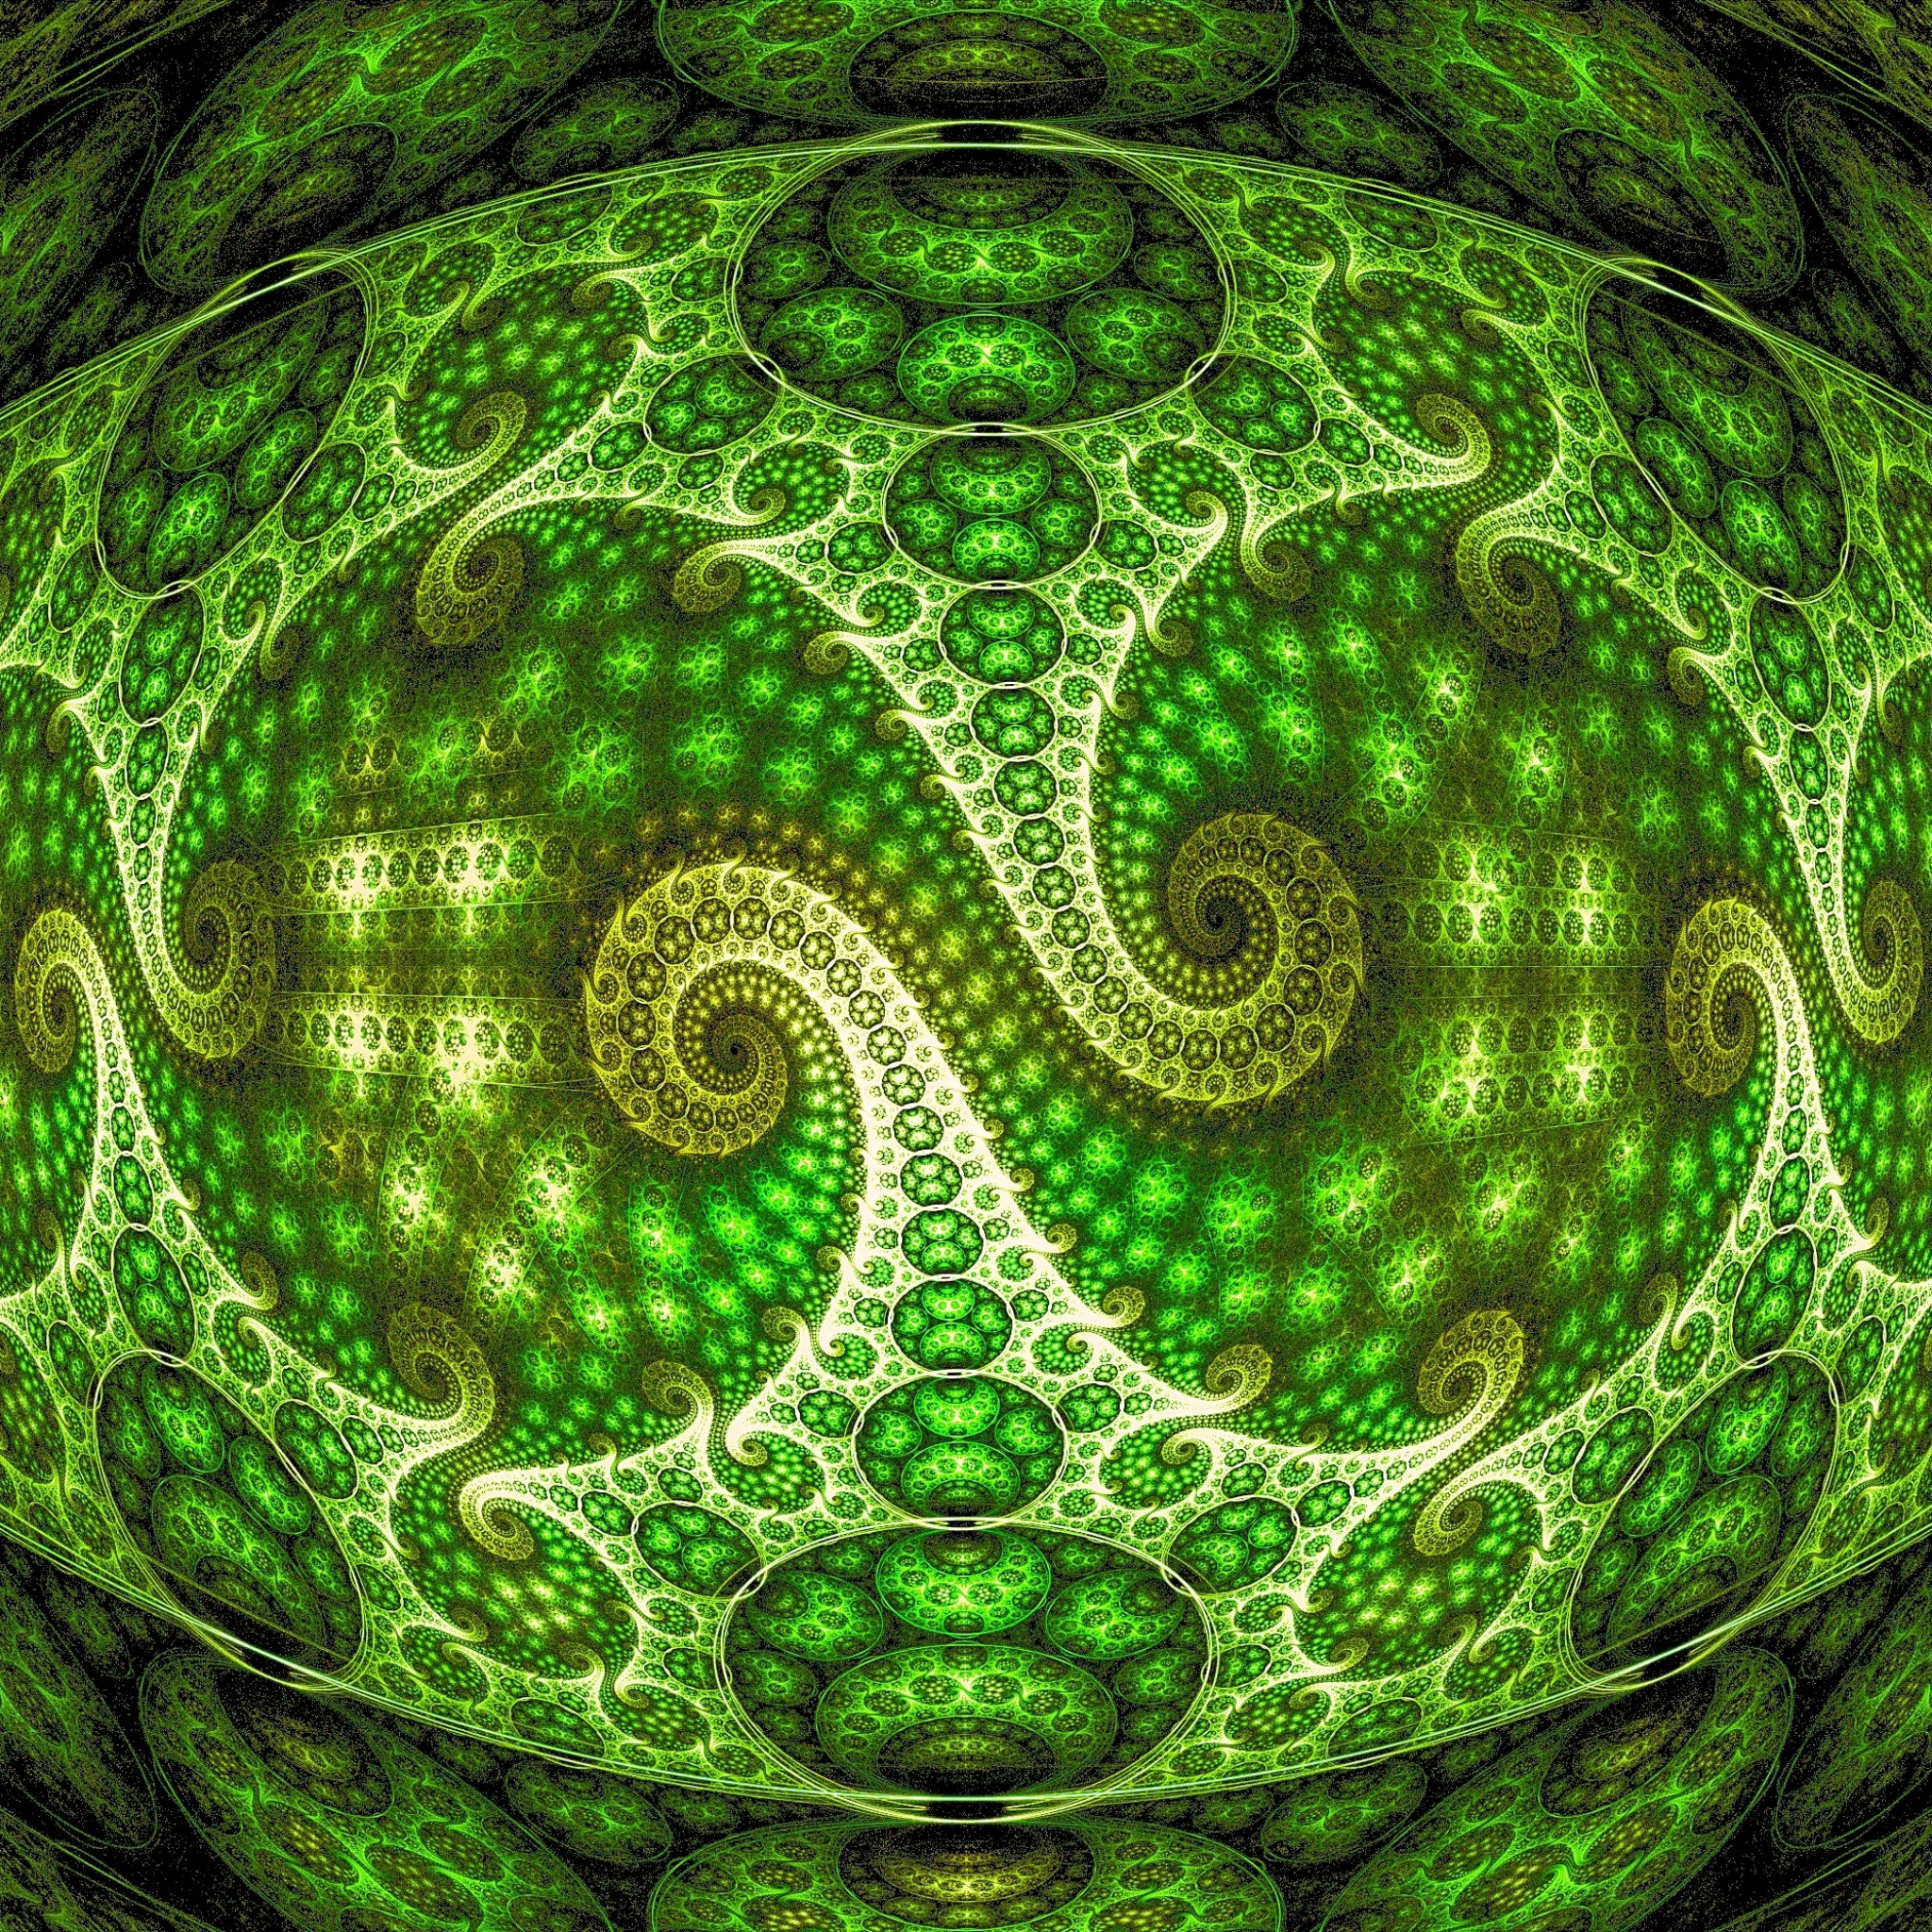 壁紙 目の錯覚 背景 ズーム パターン 緑 Ipad タブレット壁紙ギャラリー